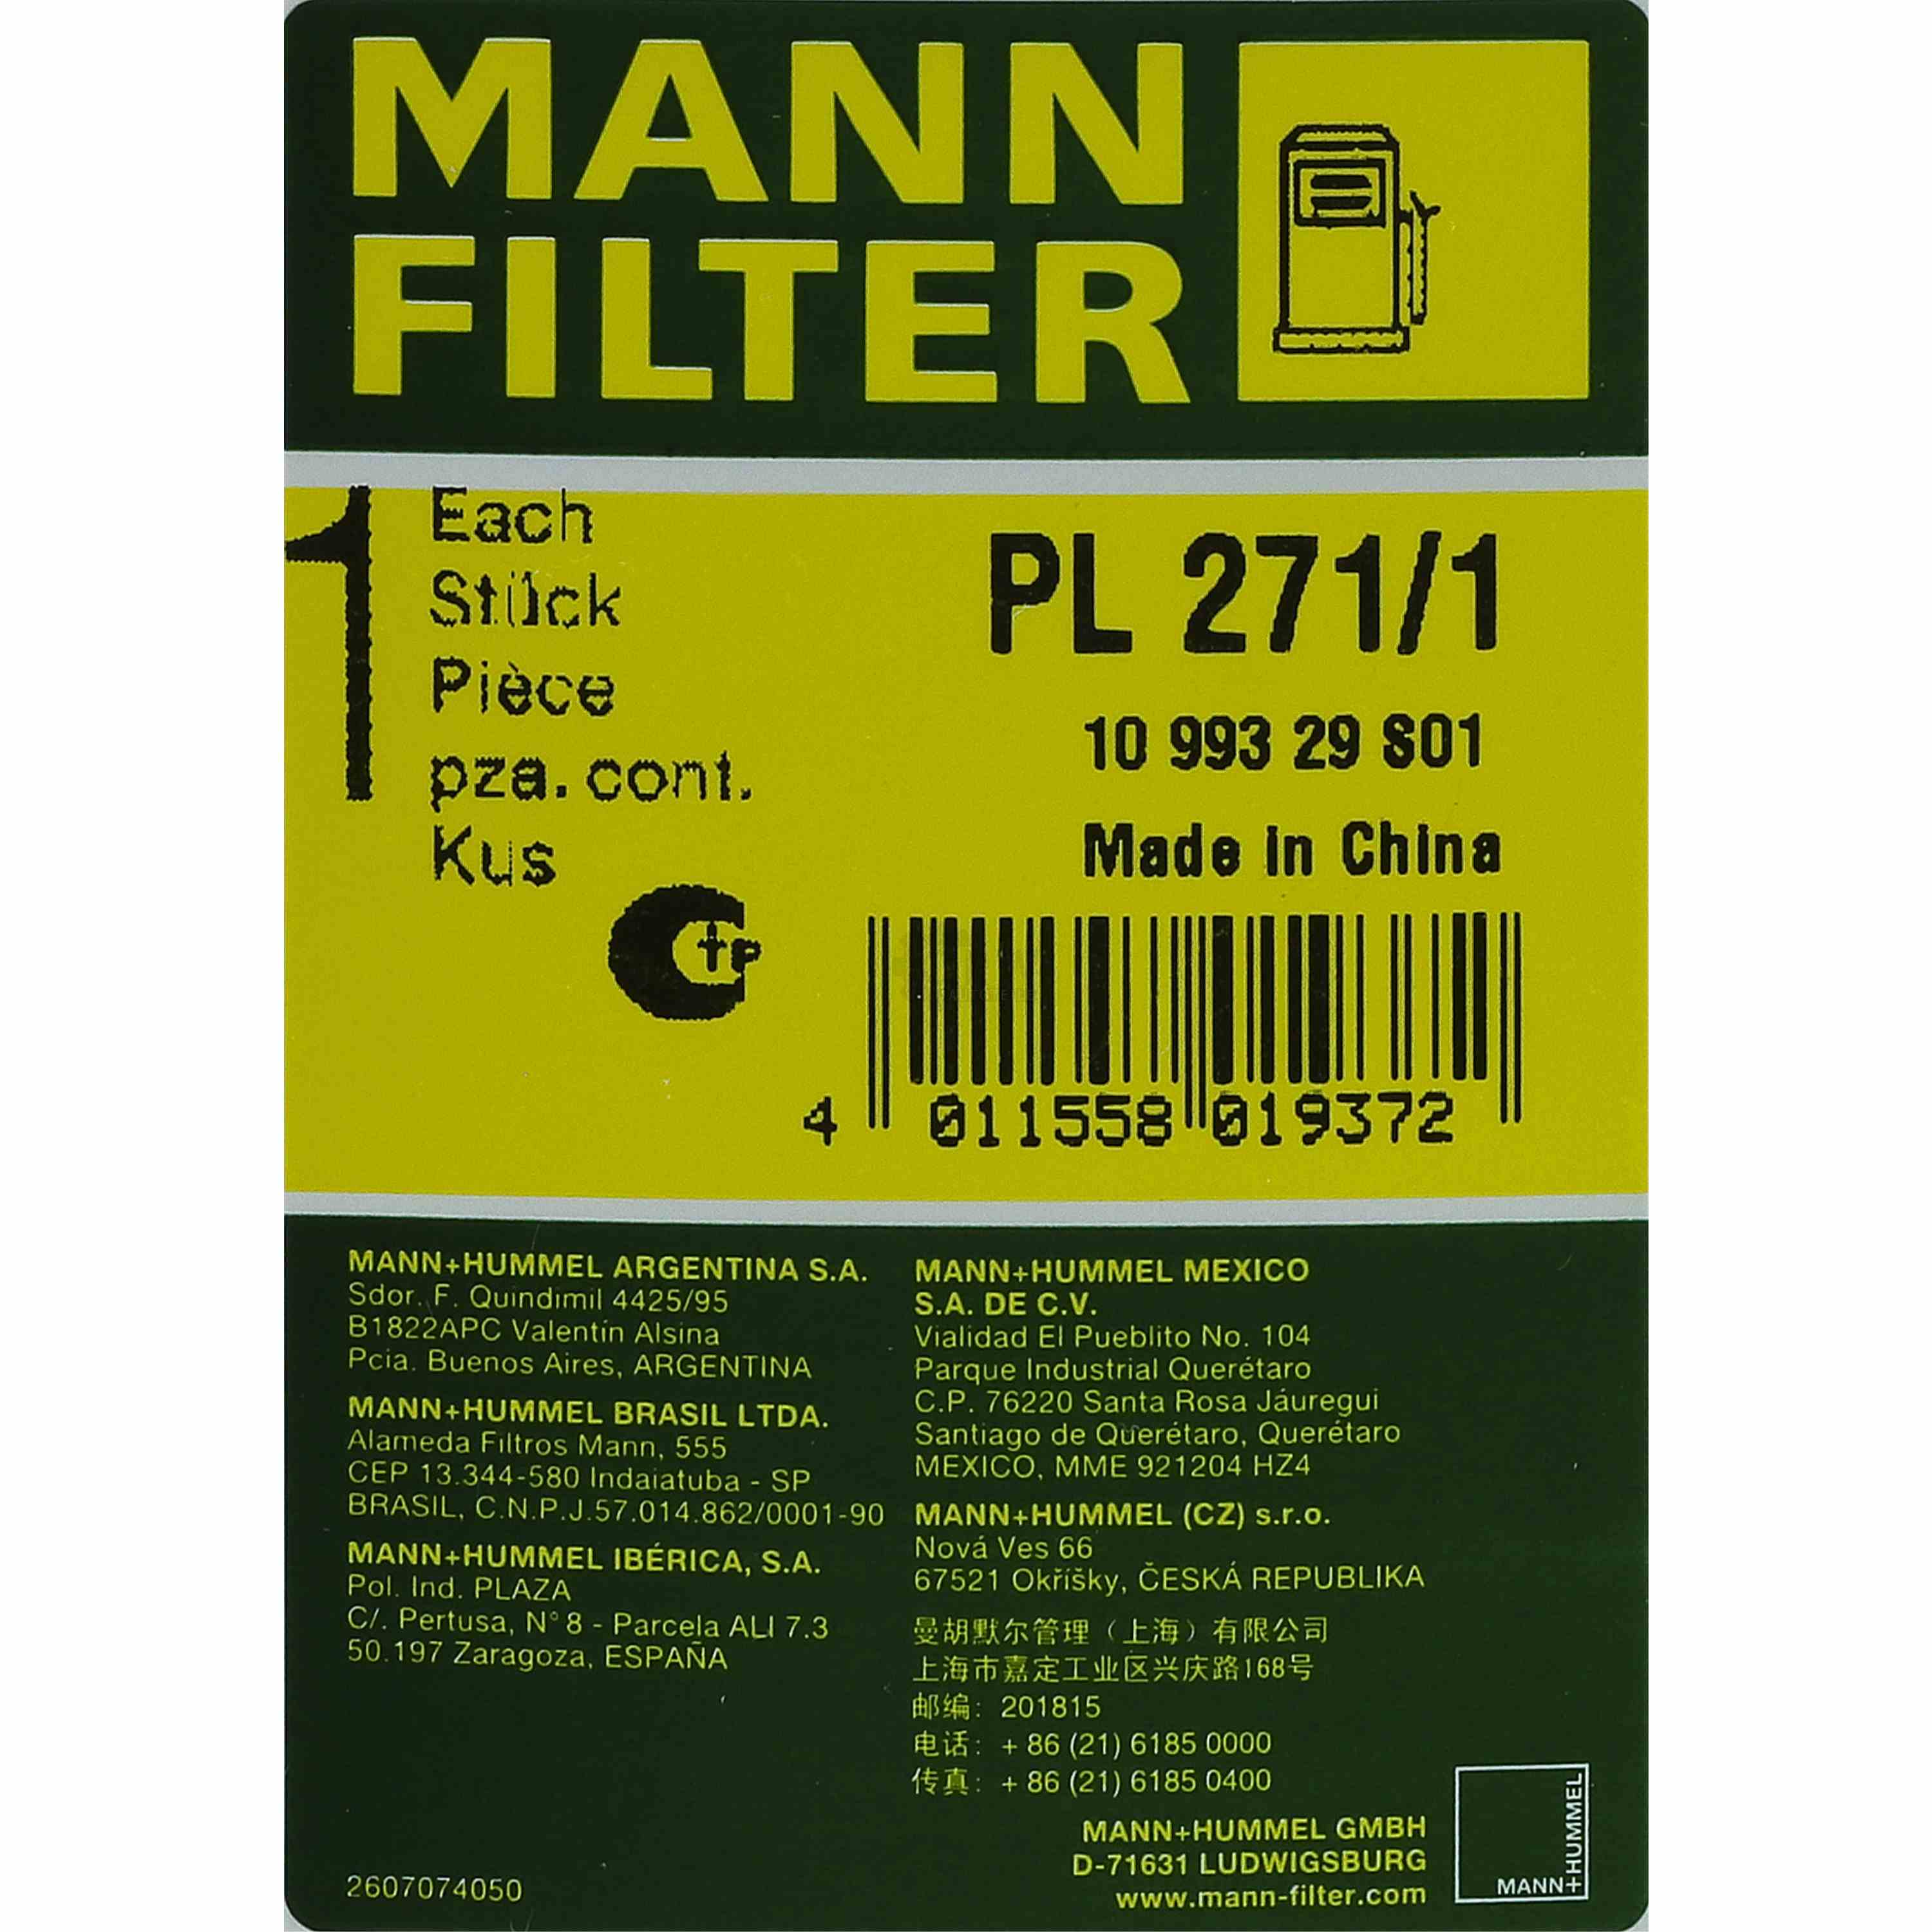 MANN FILTER Kraftstofffilter Fuel Filter PL 271/1